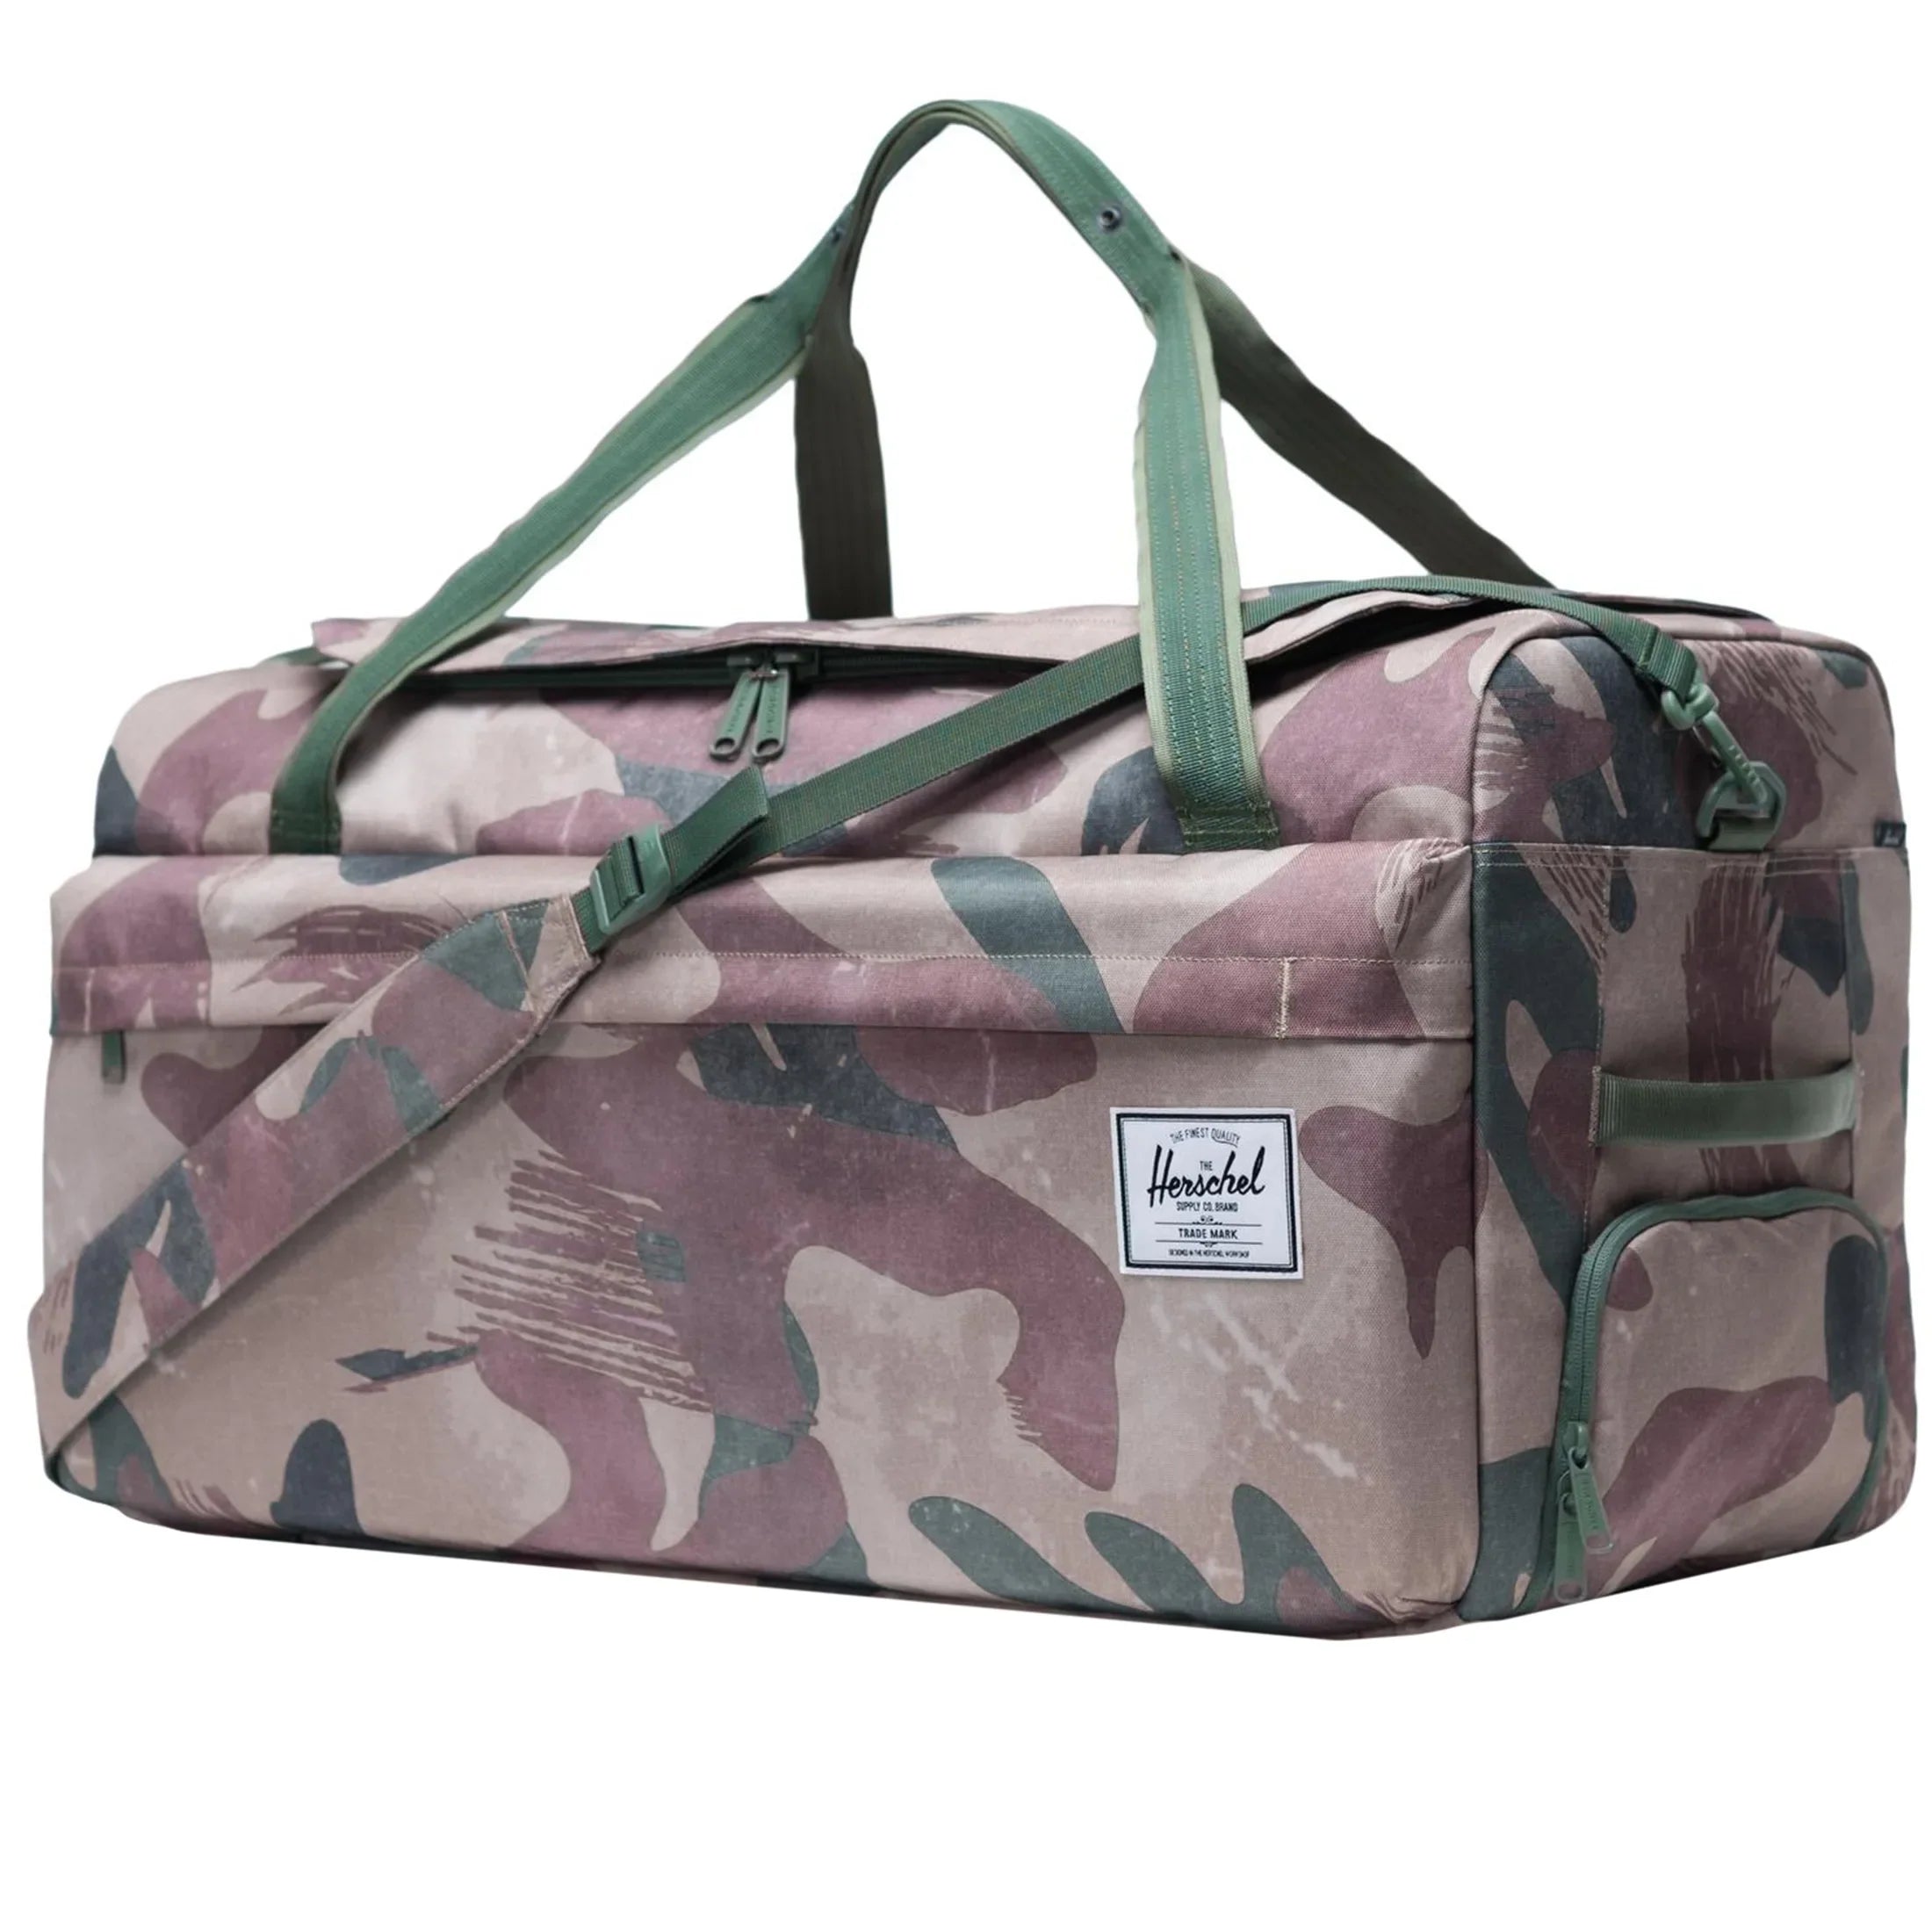 Herschel Travel Collection Outfitter sac de voyage 66 cm - camouflage coup de pinceau